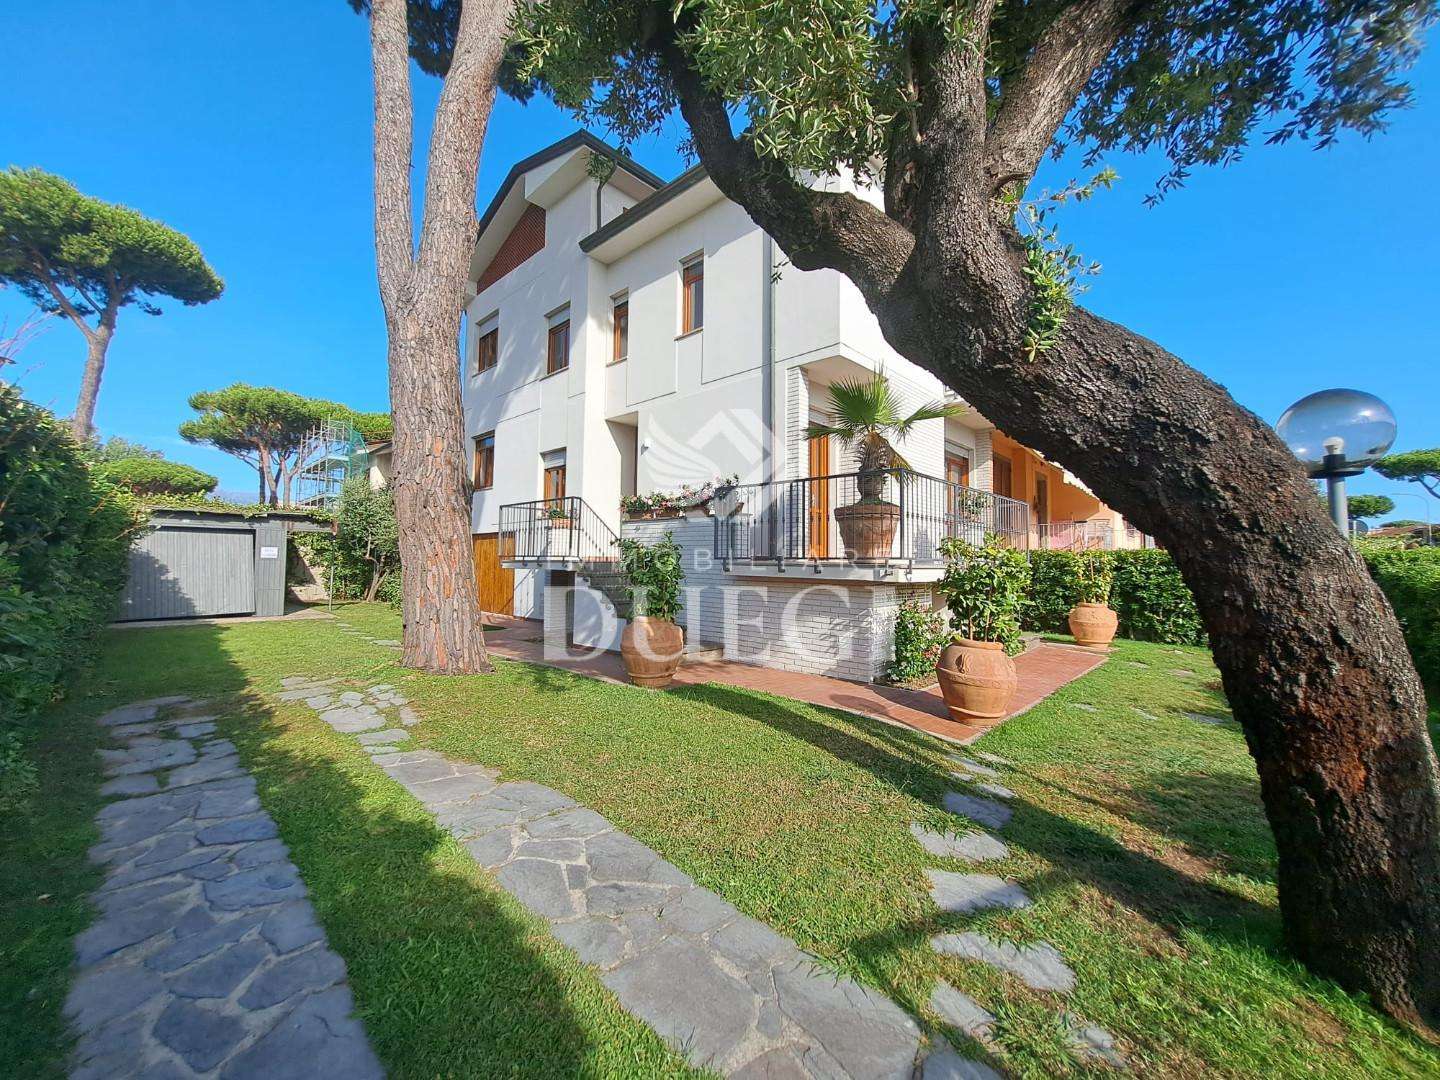 Casa Bi - Trifamiliare in Vendita a Camaiore Via Trieste, 144